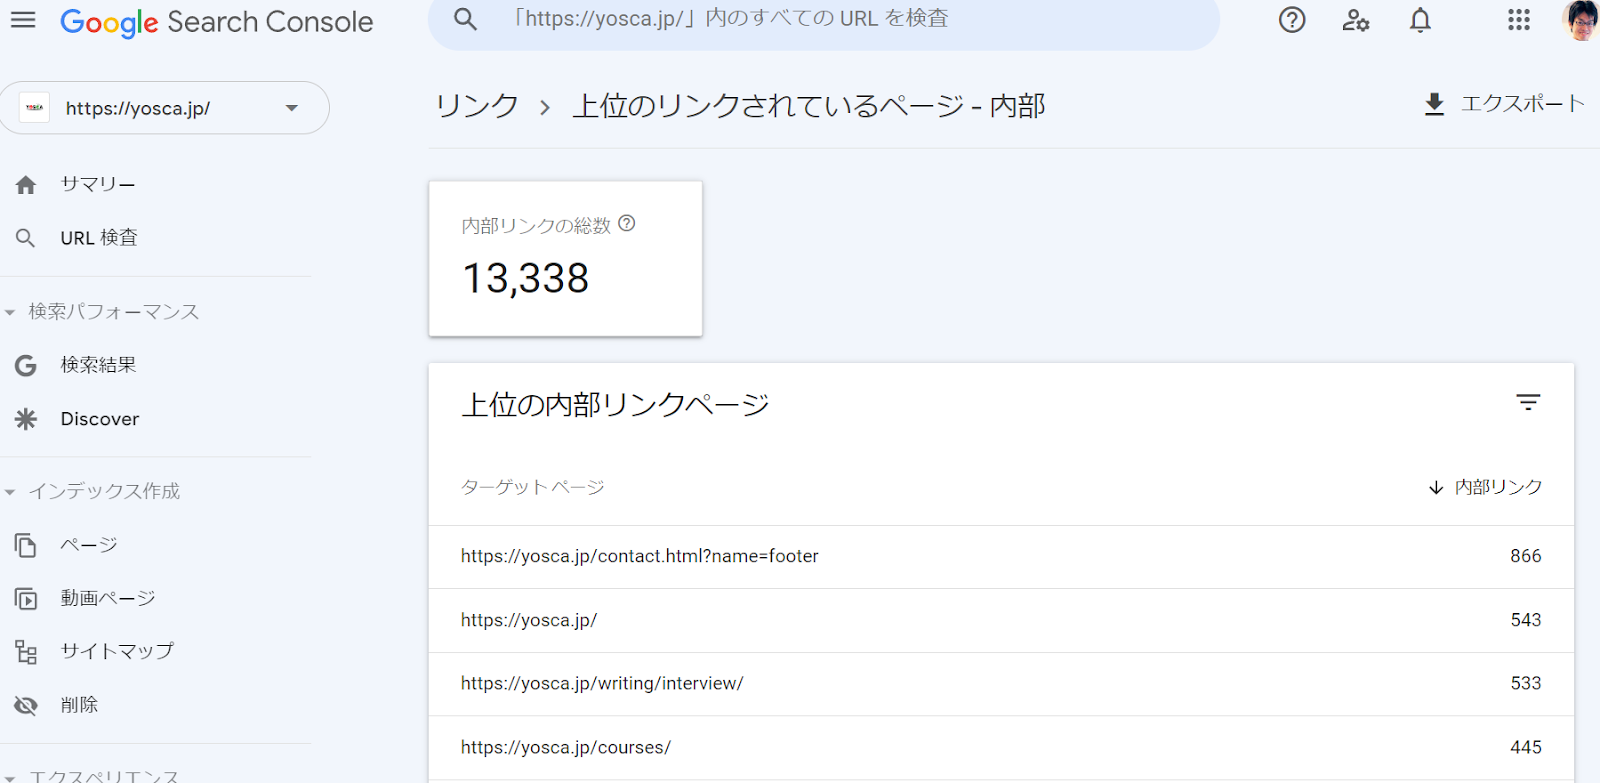 https://yosca.jp/ のGoogle Search Console （リンク>上位のリンクされているページ-内部）